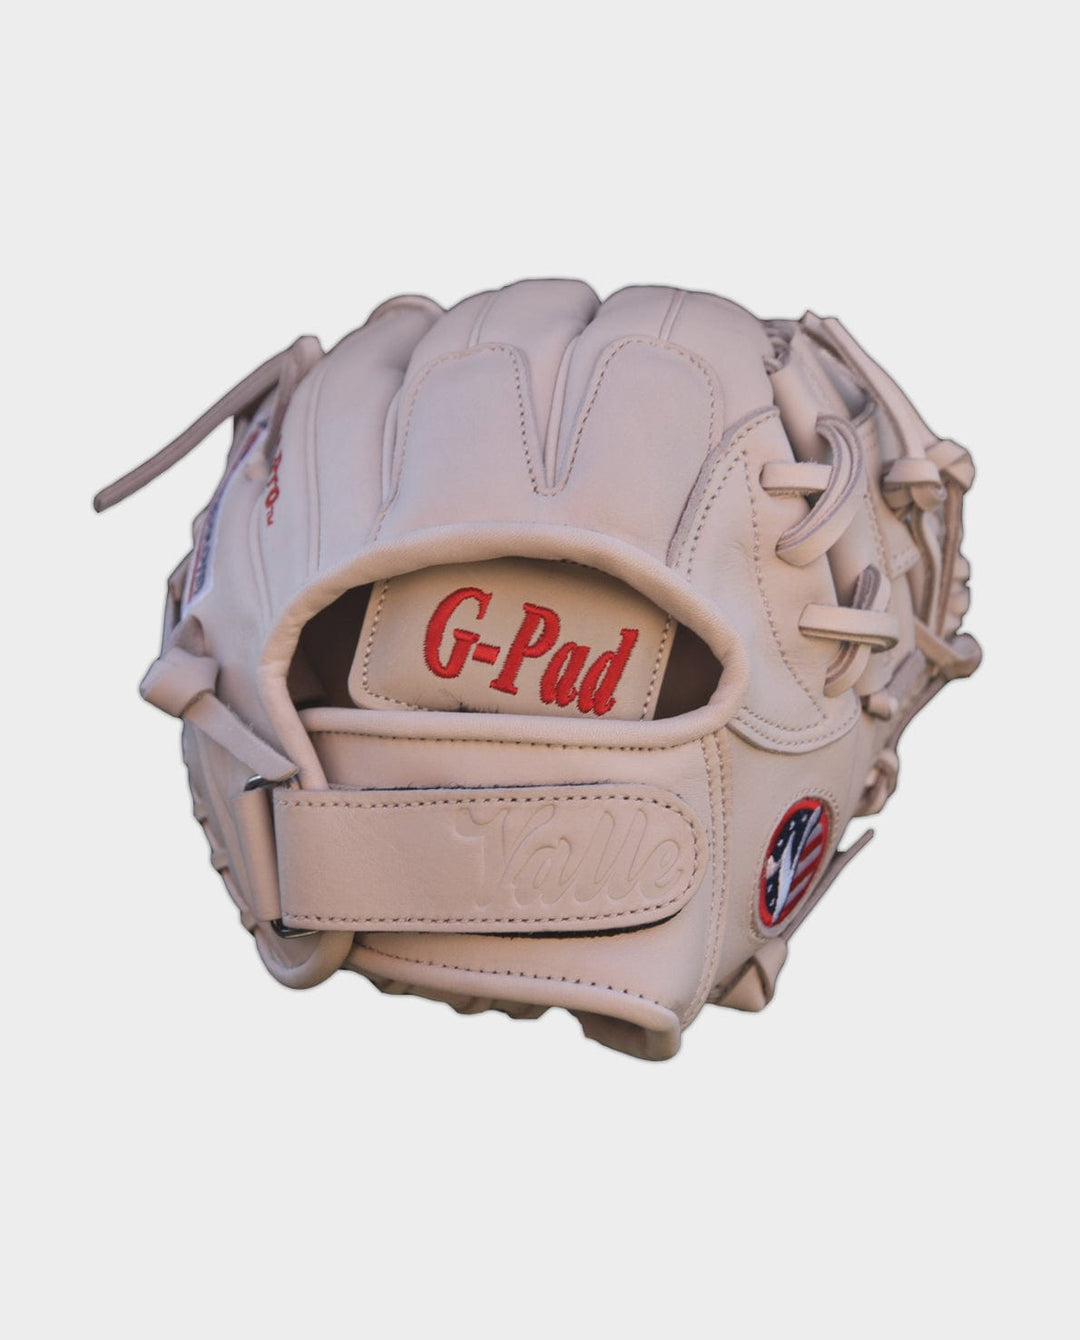 Valle Sporting Goods Baseball & Softball Gloves Eagle G-Pad – Glove Pad | Valle Sporting Goods